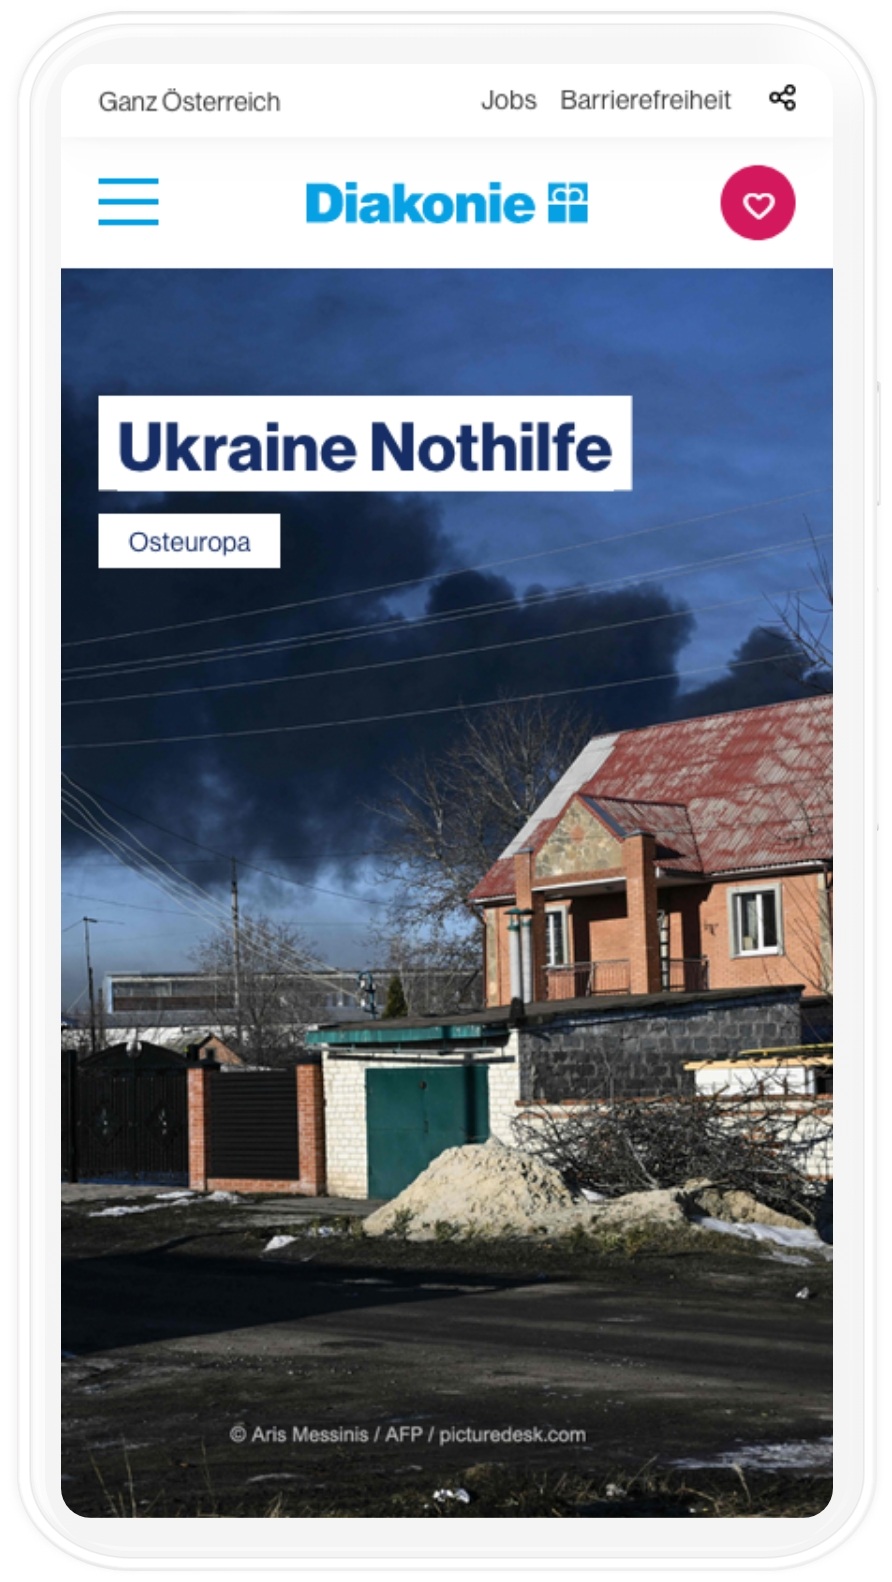 Ukraine Nothilfe der Diakonie Website Smartphone